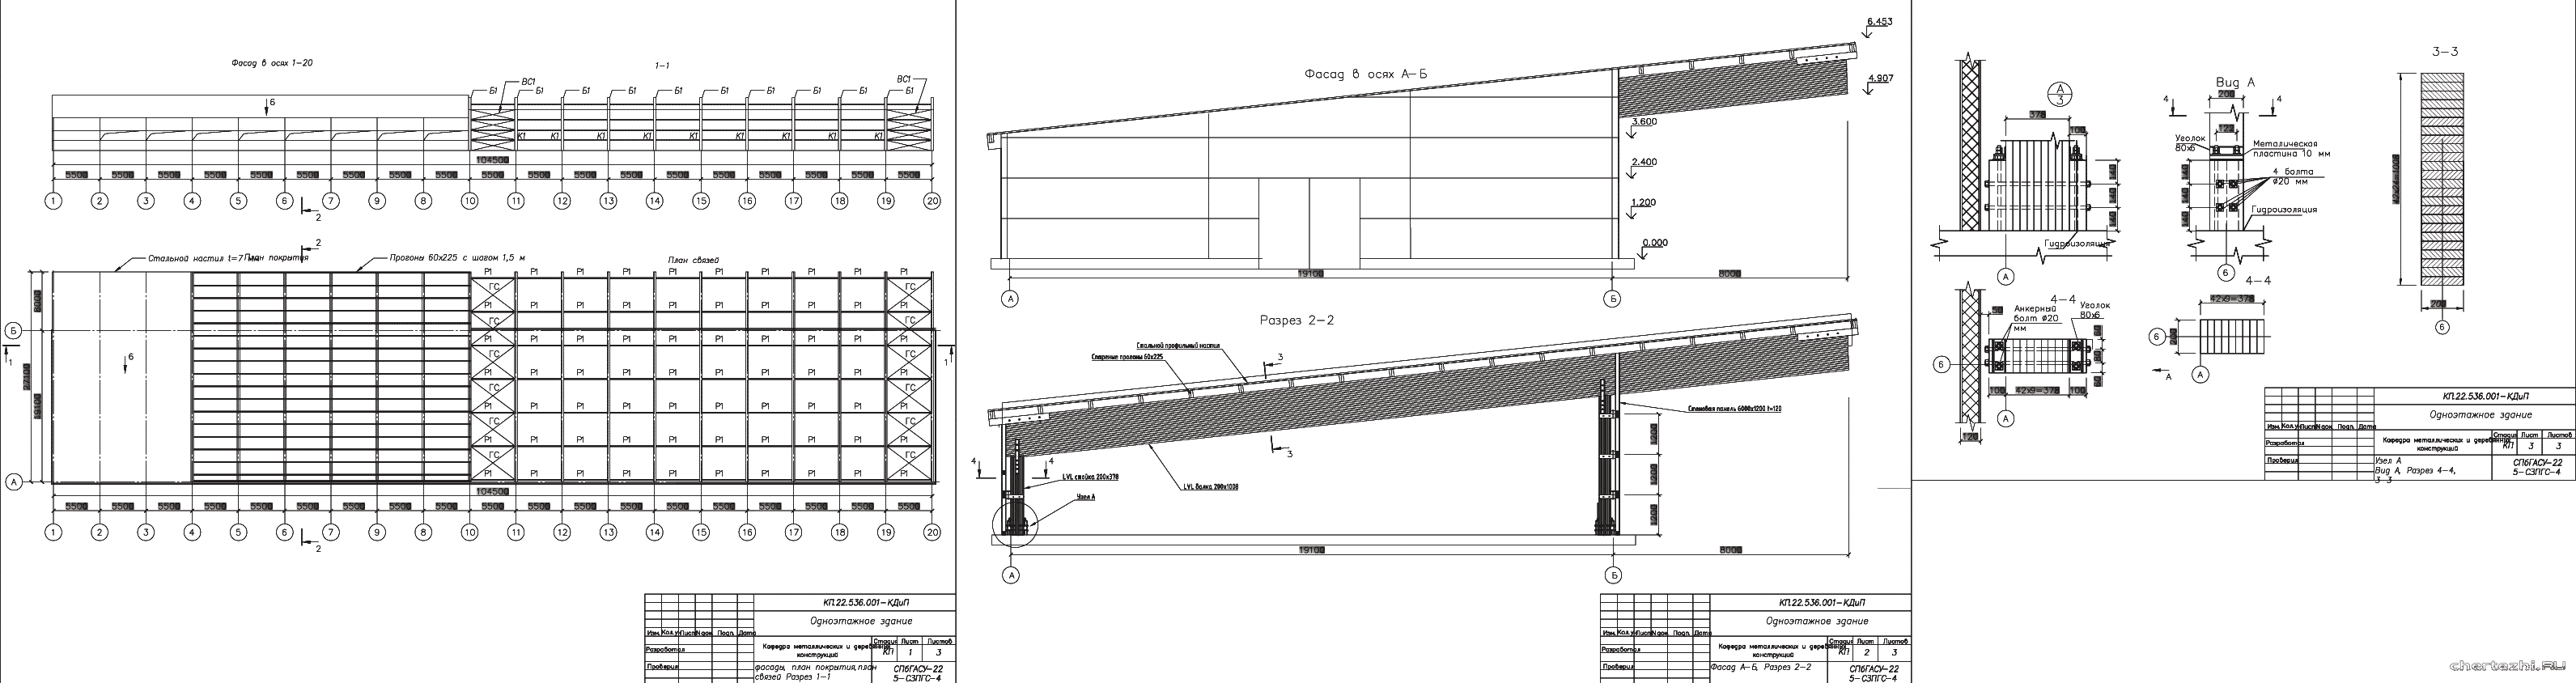 Курсовой проект - КД одноэтажного промышленного здания с консолью из LVL 104,5 х 19,1 м в г. Тында